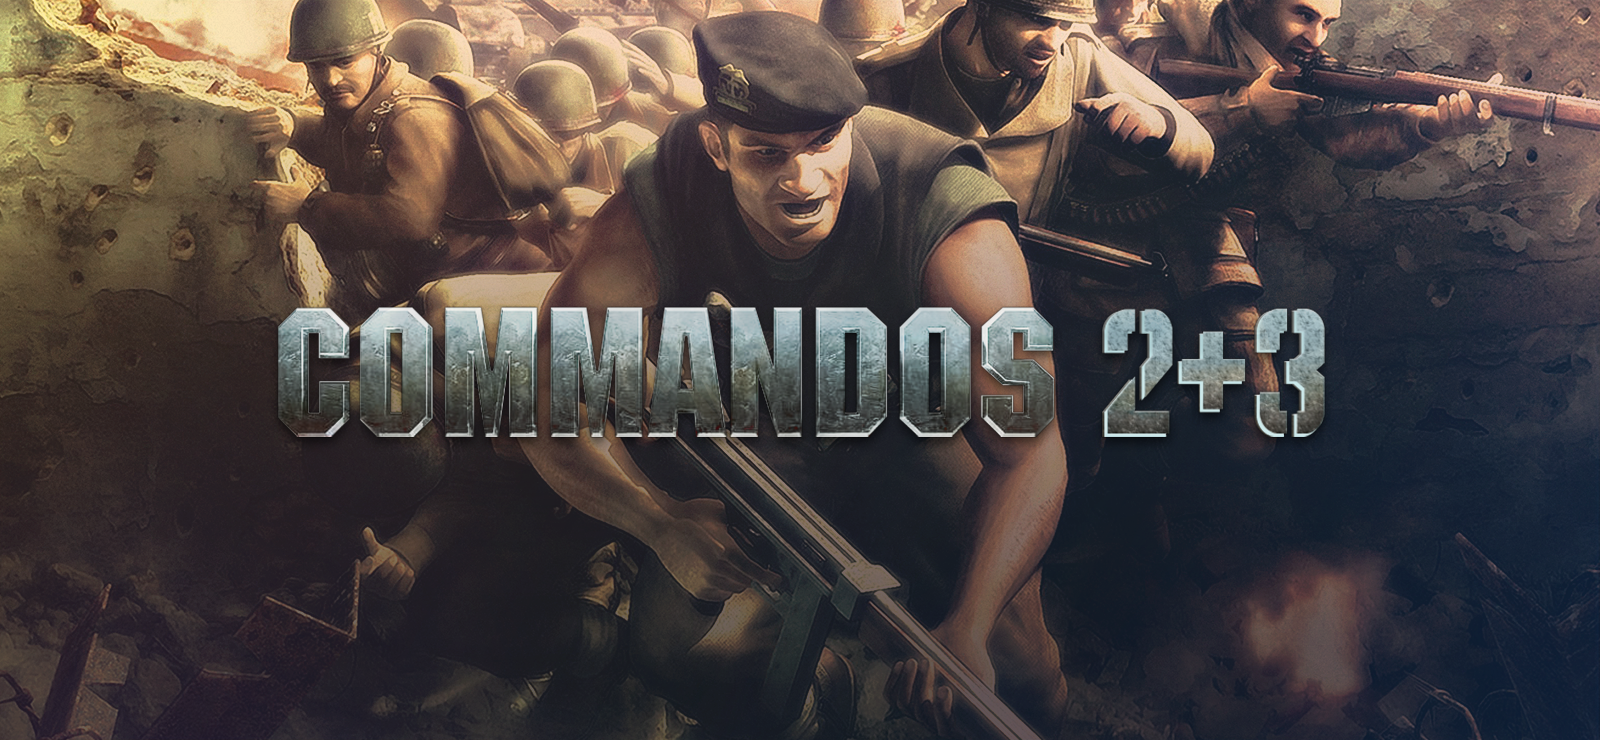 Commandos 2+3